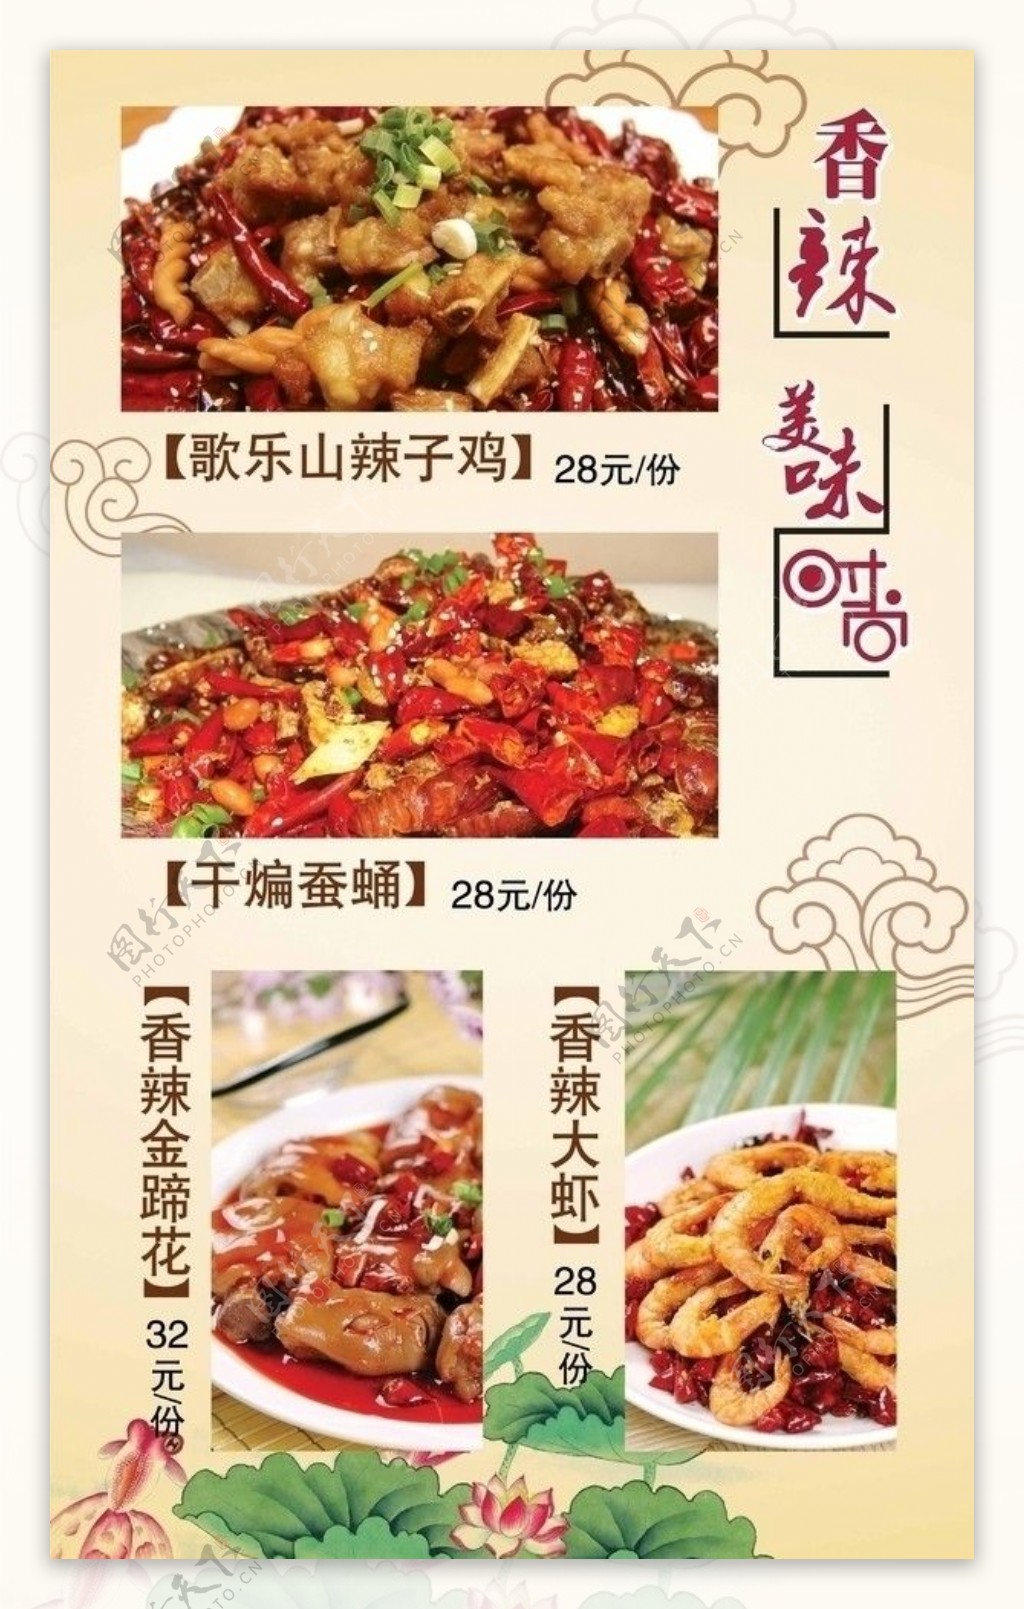 巴蜀风情川味餐厅香辣菜图片